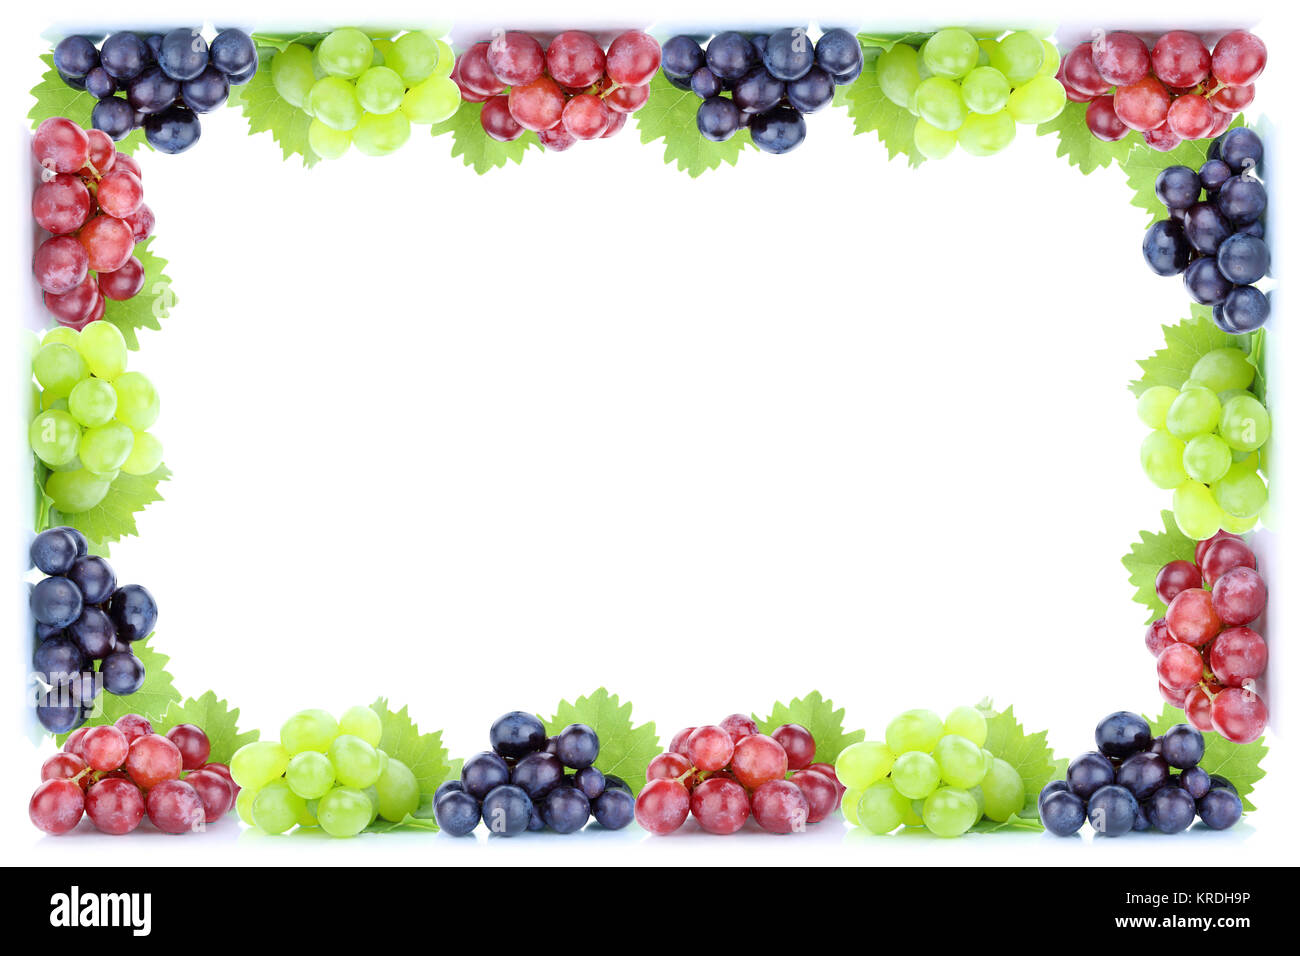 Trauben Weintrauben rot grün blau frische bio Früchte Herbst Obst Freisteller freigestellt isoliert vor einem weissen Hintergrund Rahmen Textfreiraum Copyspace Stock Photo